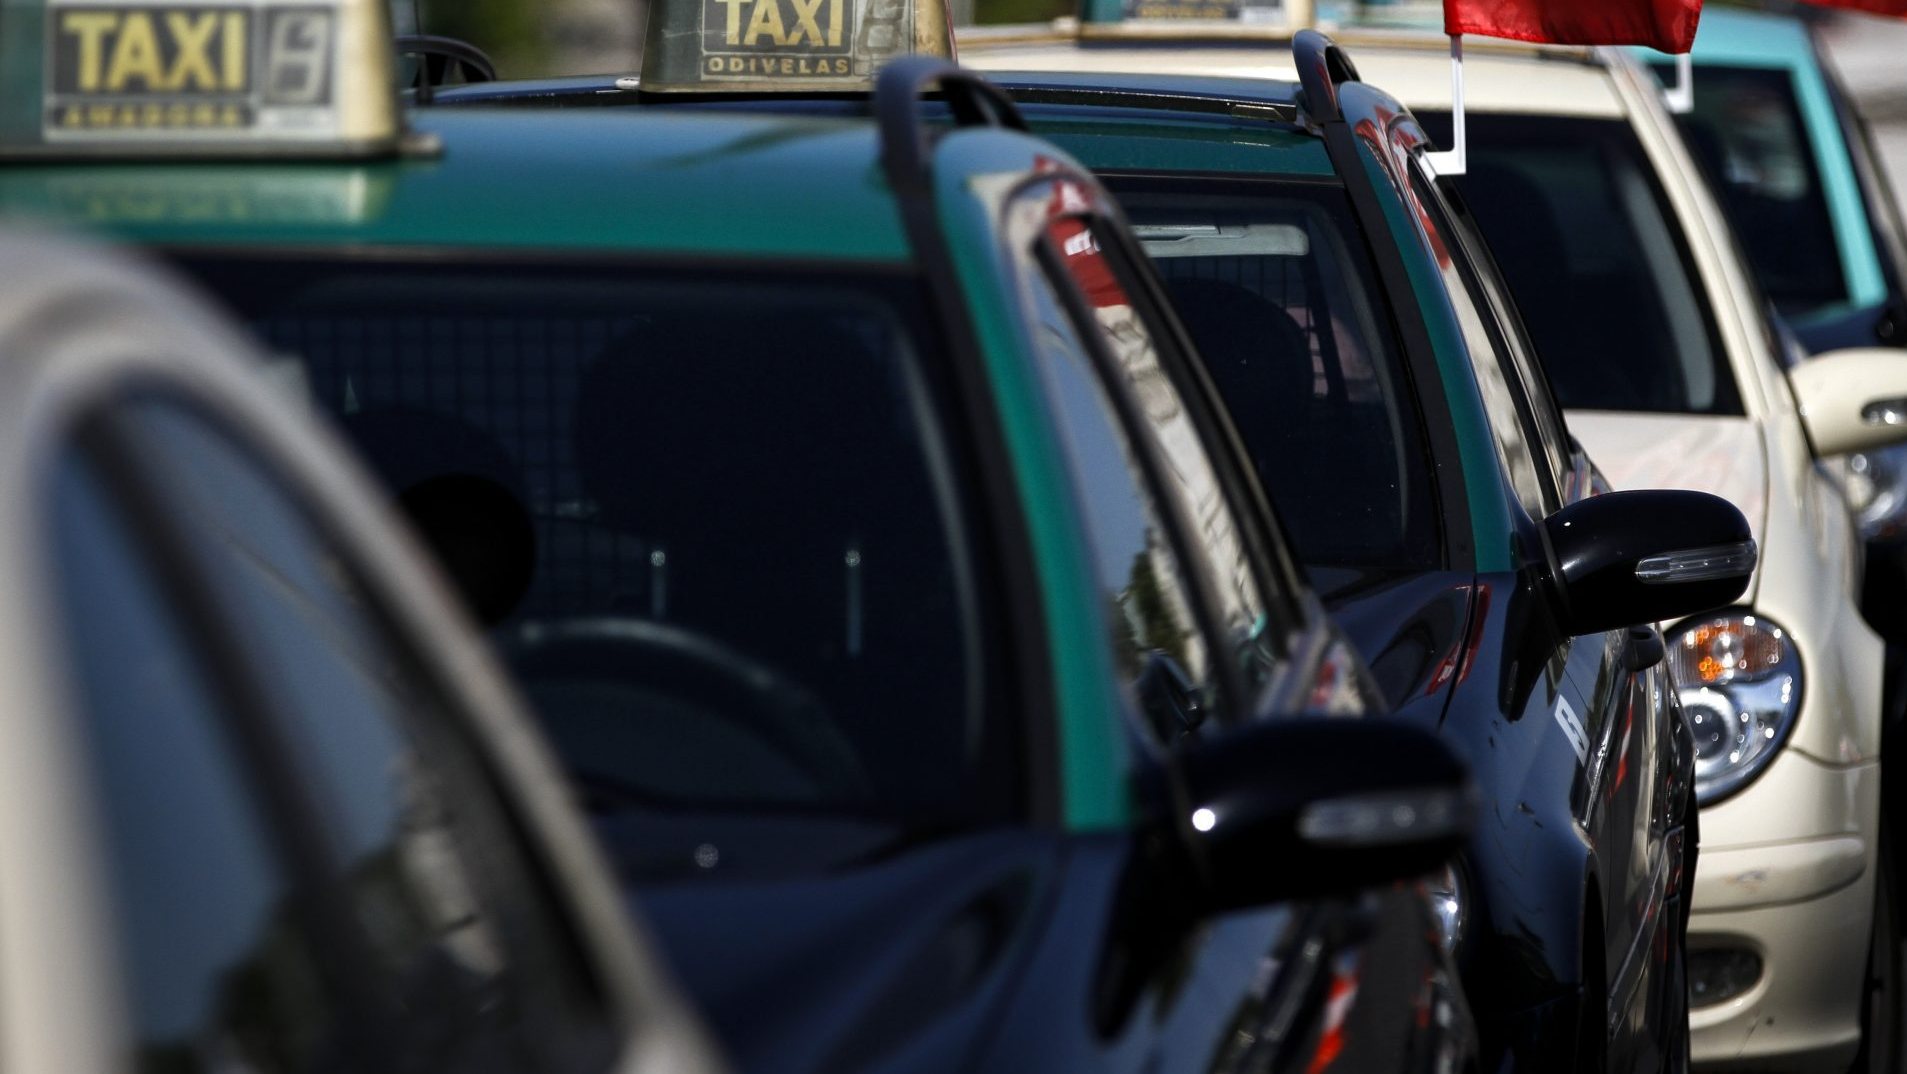 Período de adaptação à proibição de circulação de táxis com mais de 10 anos prorrogado até 2025, revela Governo